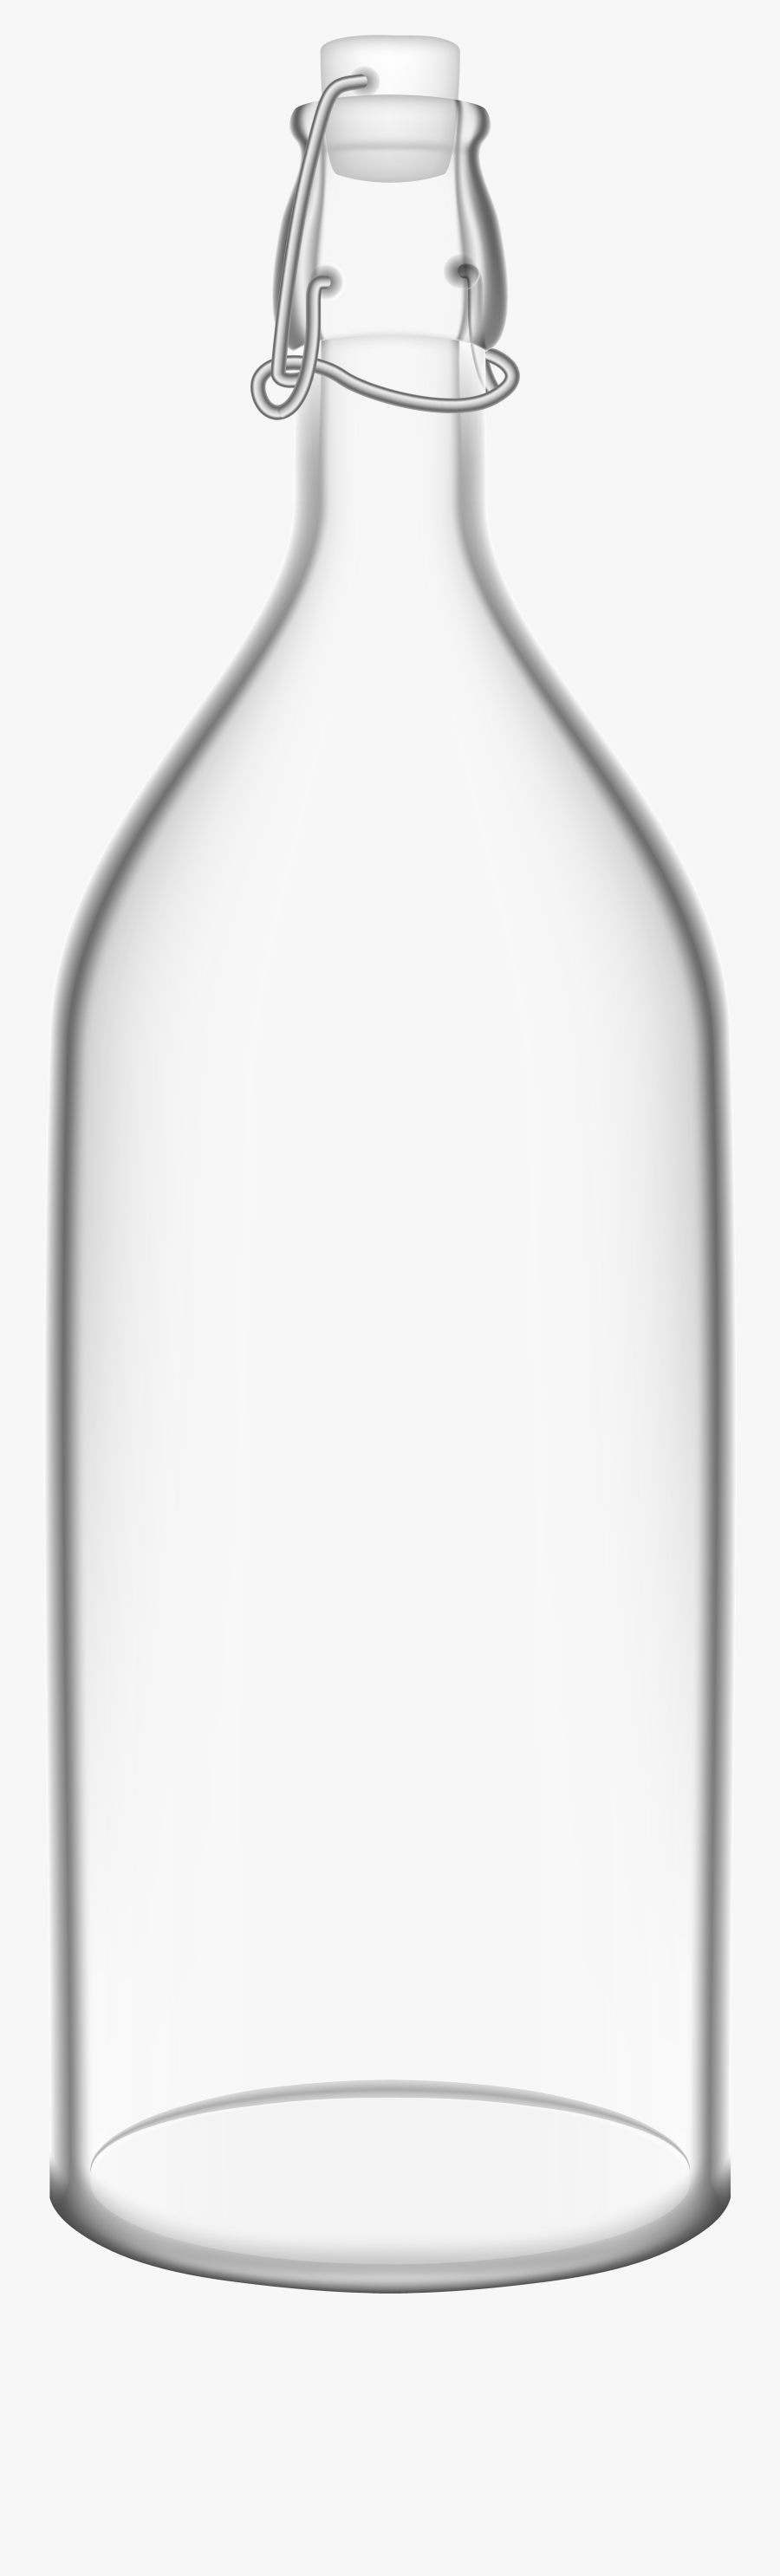 Glass Bottle Png Clip Art - Arch, Transparent Clipart